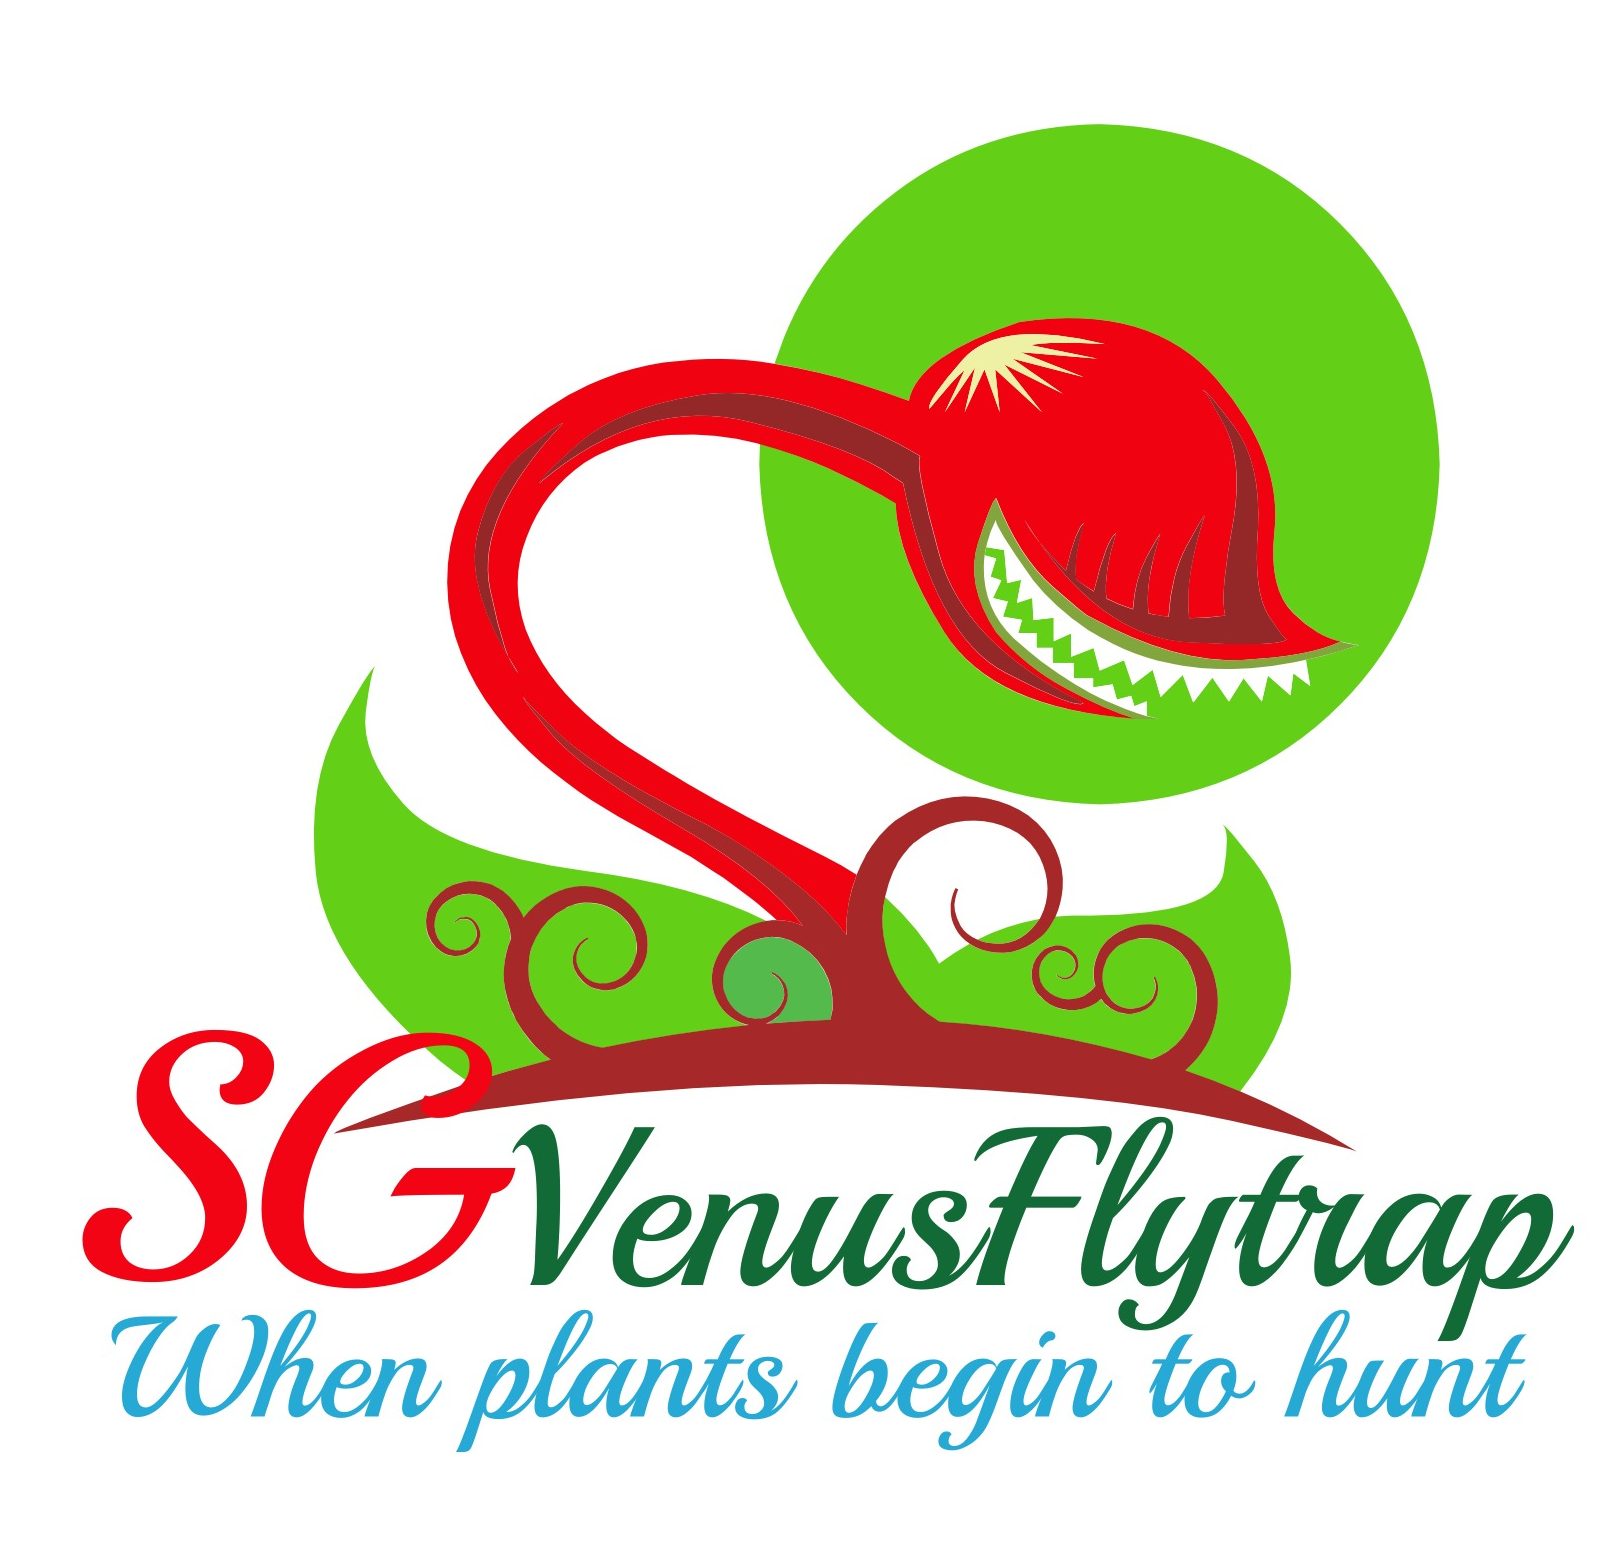 SG VenusFlytrap